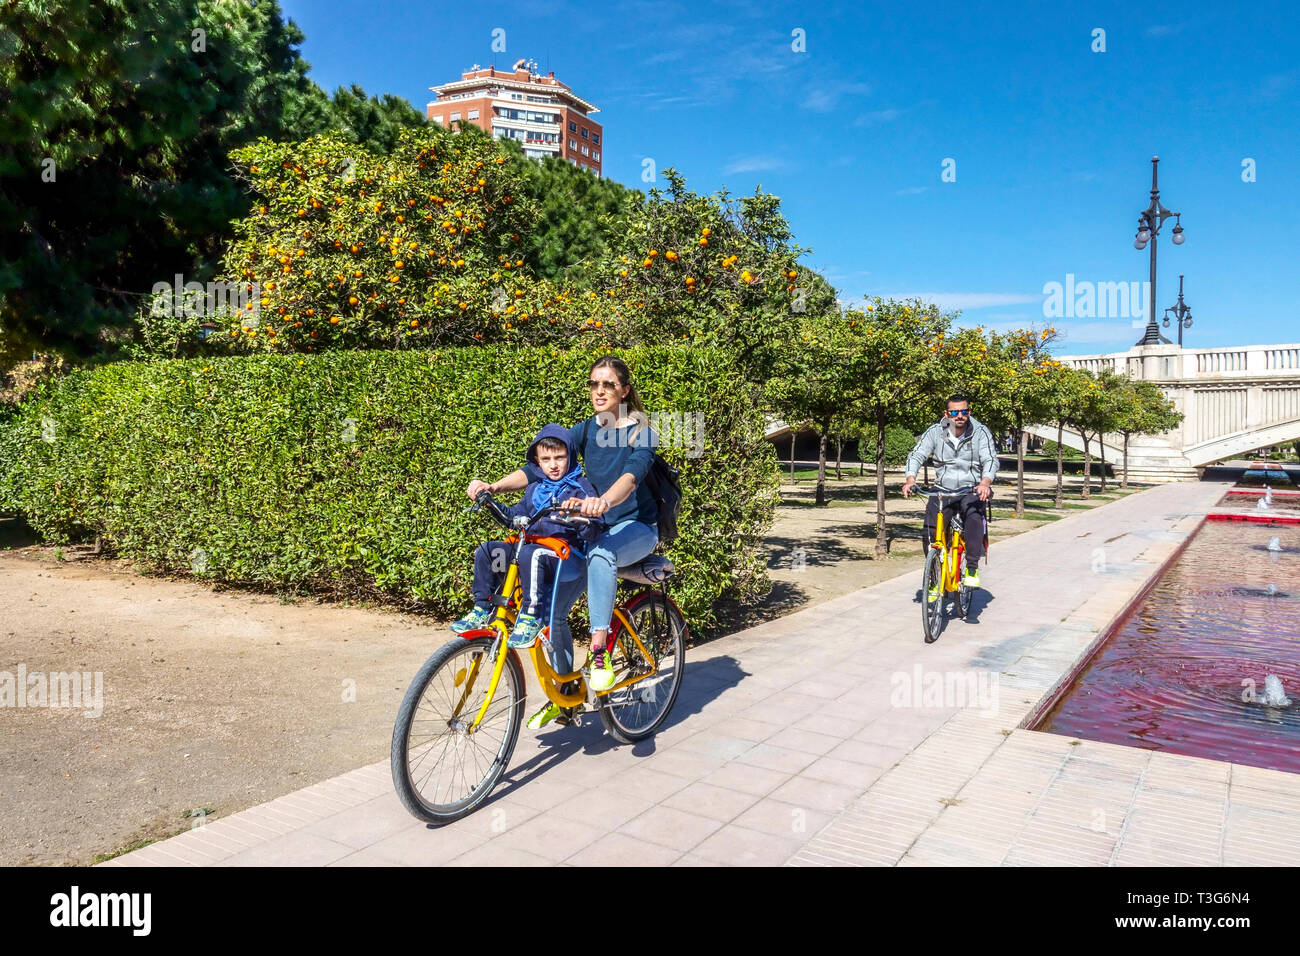 Turia Valencia Gärten, Familien Radtouren im Park, Spanien Fahrradstadt Europa Spanien Fahrradstadt Menschen mit Orangenbäumen Stockfoto